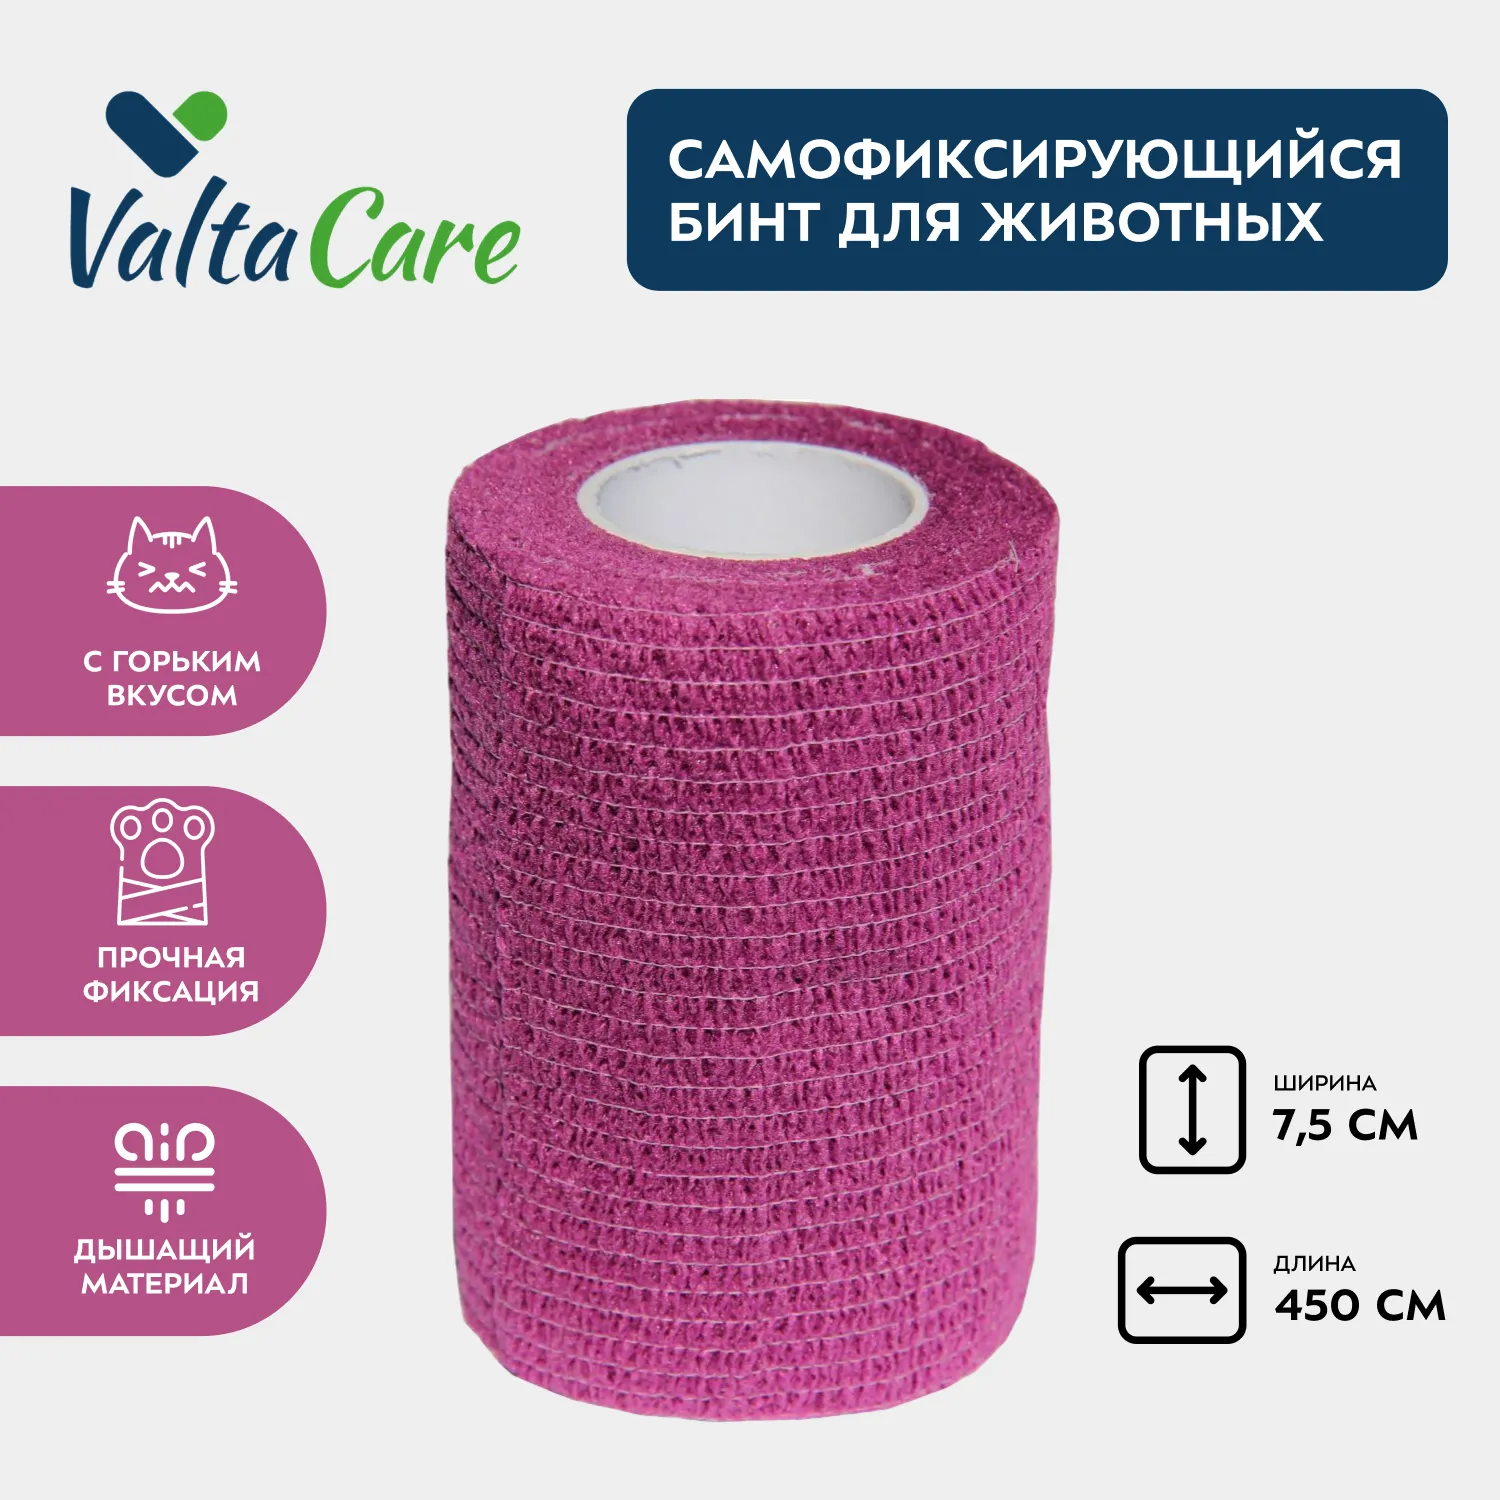 Valta Care Premium бинт самофиксирующийся c горьким вкусом 7,5 см х 450 см, фиолетовый